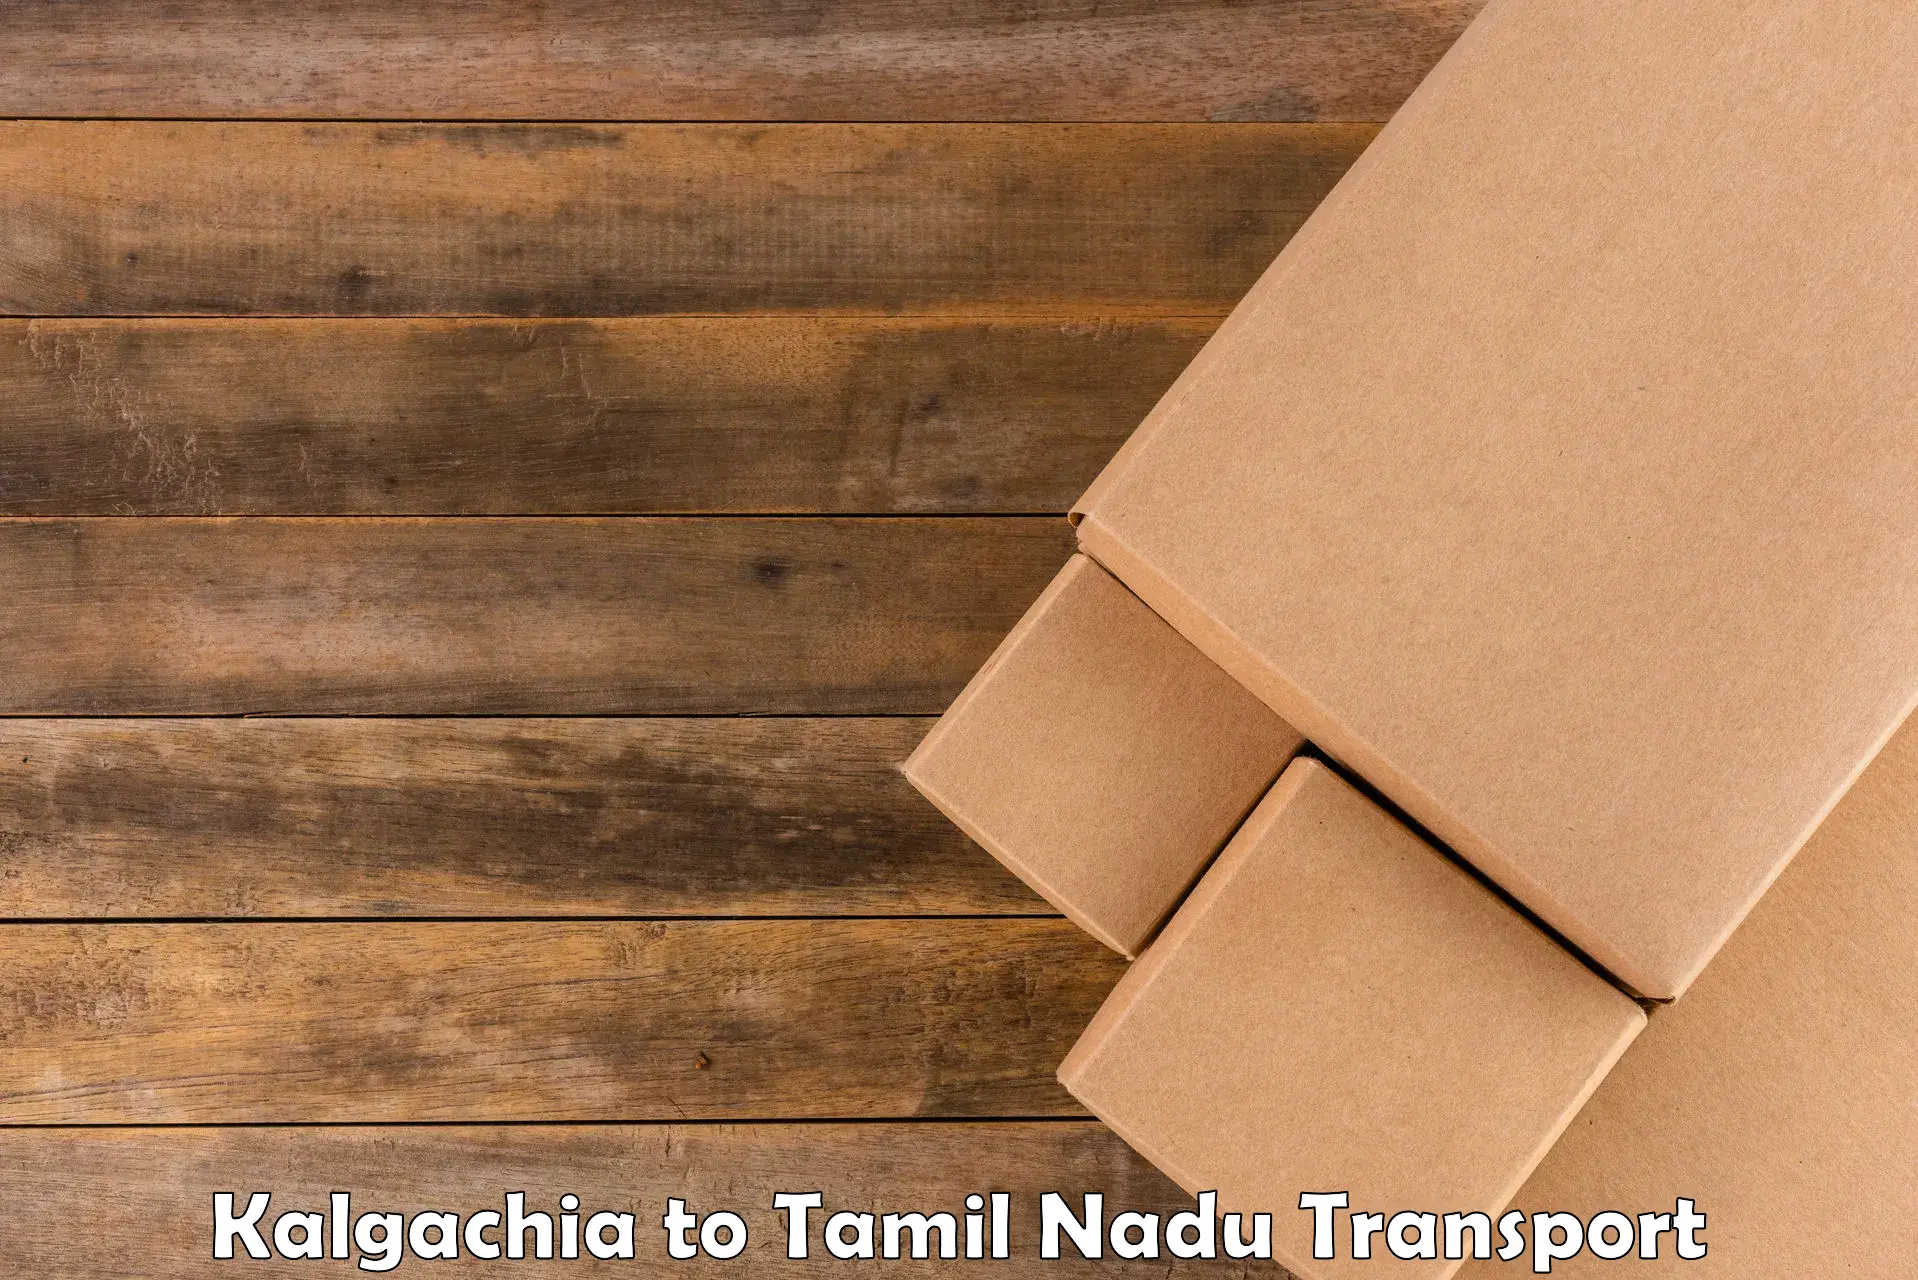 Road transport online services Kalgachia to Parangimalai